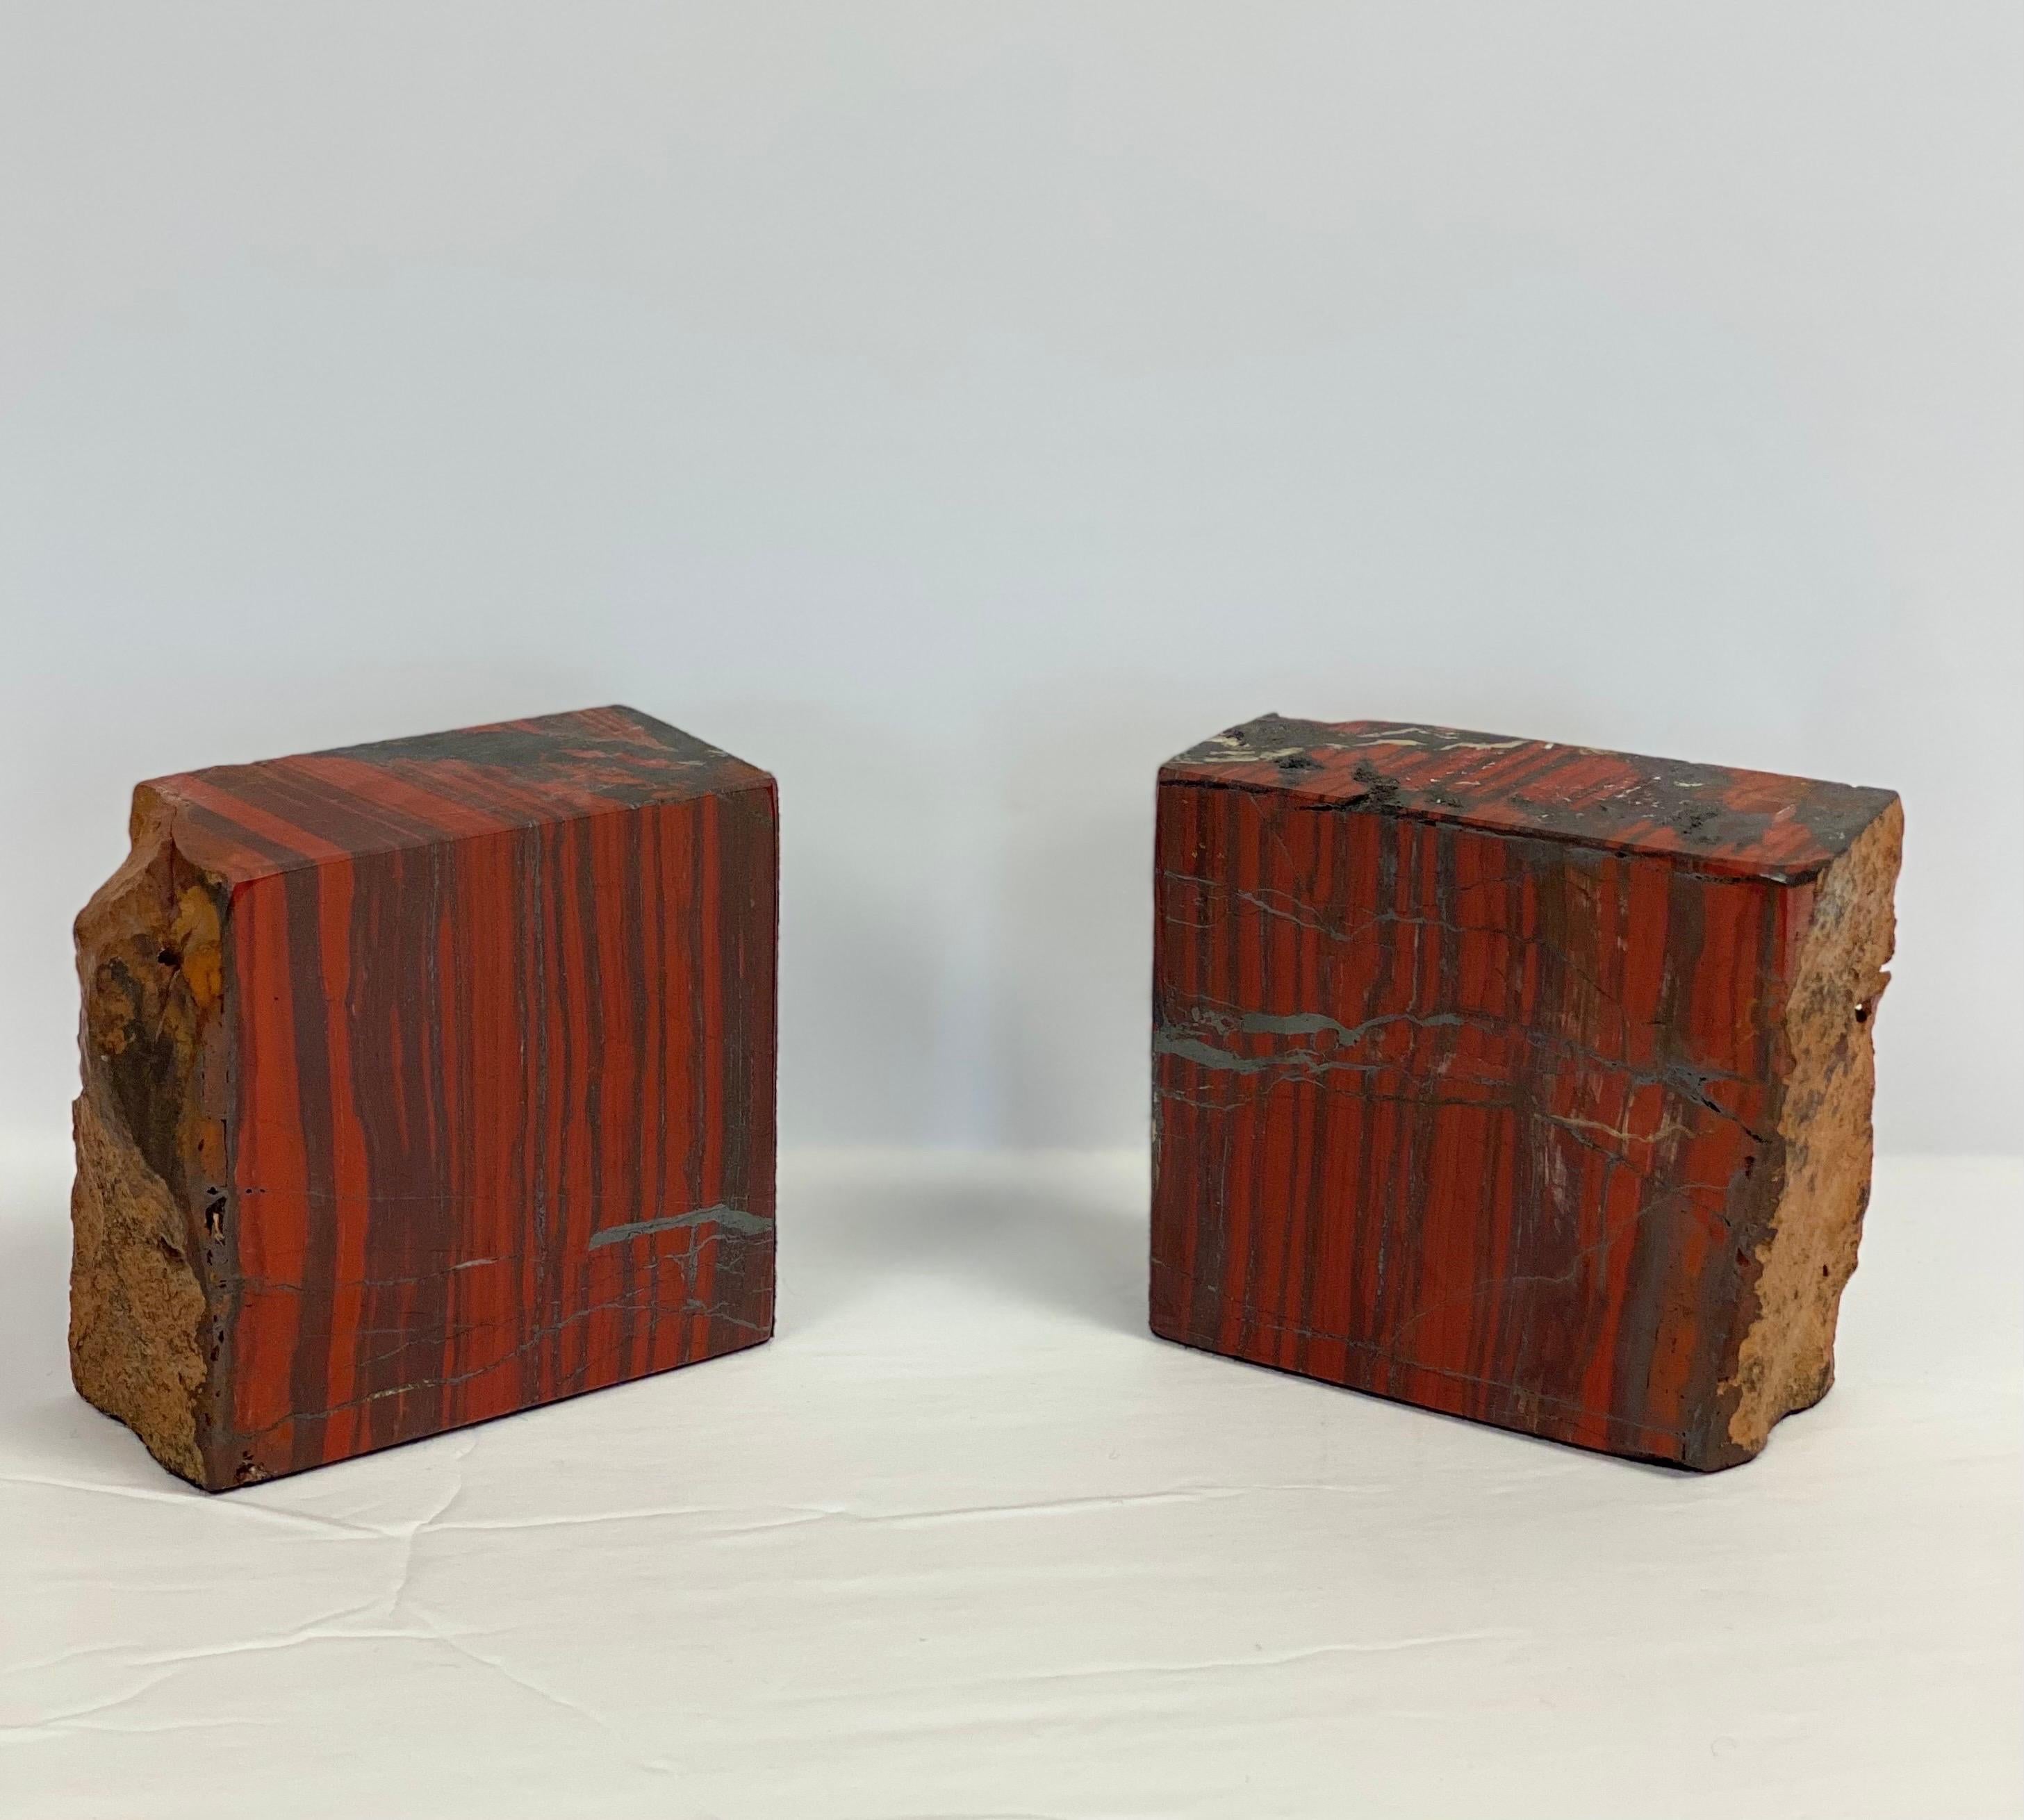 Wir freuen uns sehr, ein einzigartiges Paar schwerer, versteinerter Holz-Buchstützen aus den 1960er Jahren anbieten zu können. Versteinertes Holz ist die Bezeichnung für Holz, das durch den Prozess der Permineralisierung zu Stein geworden ist